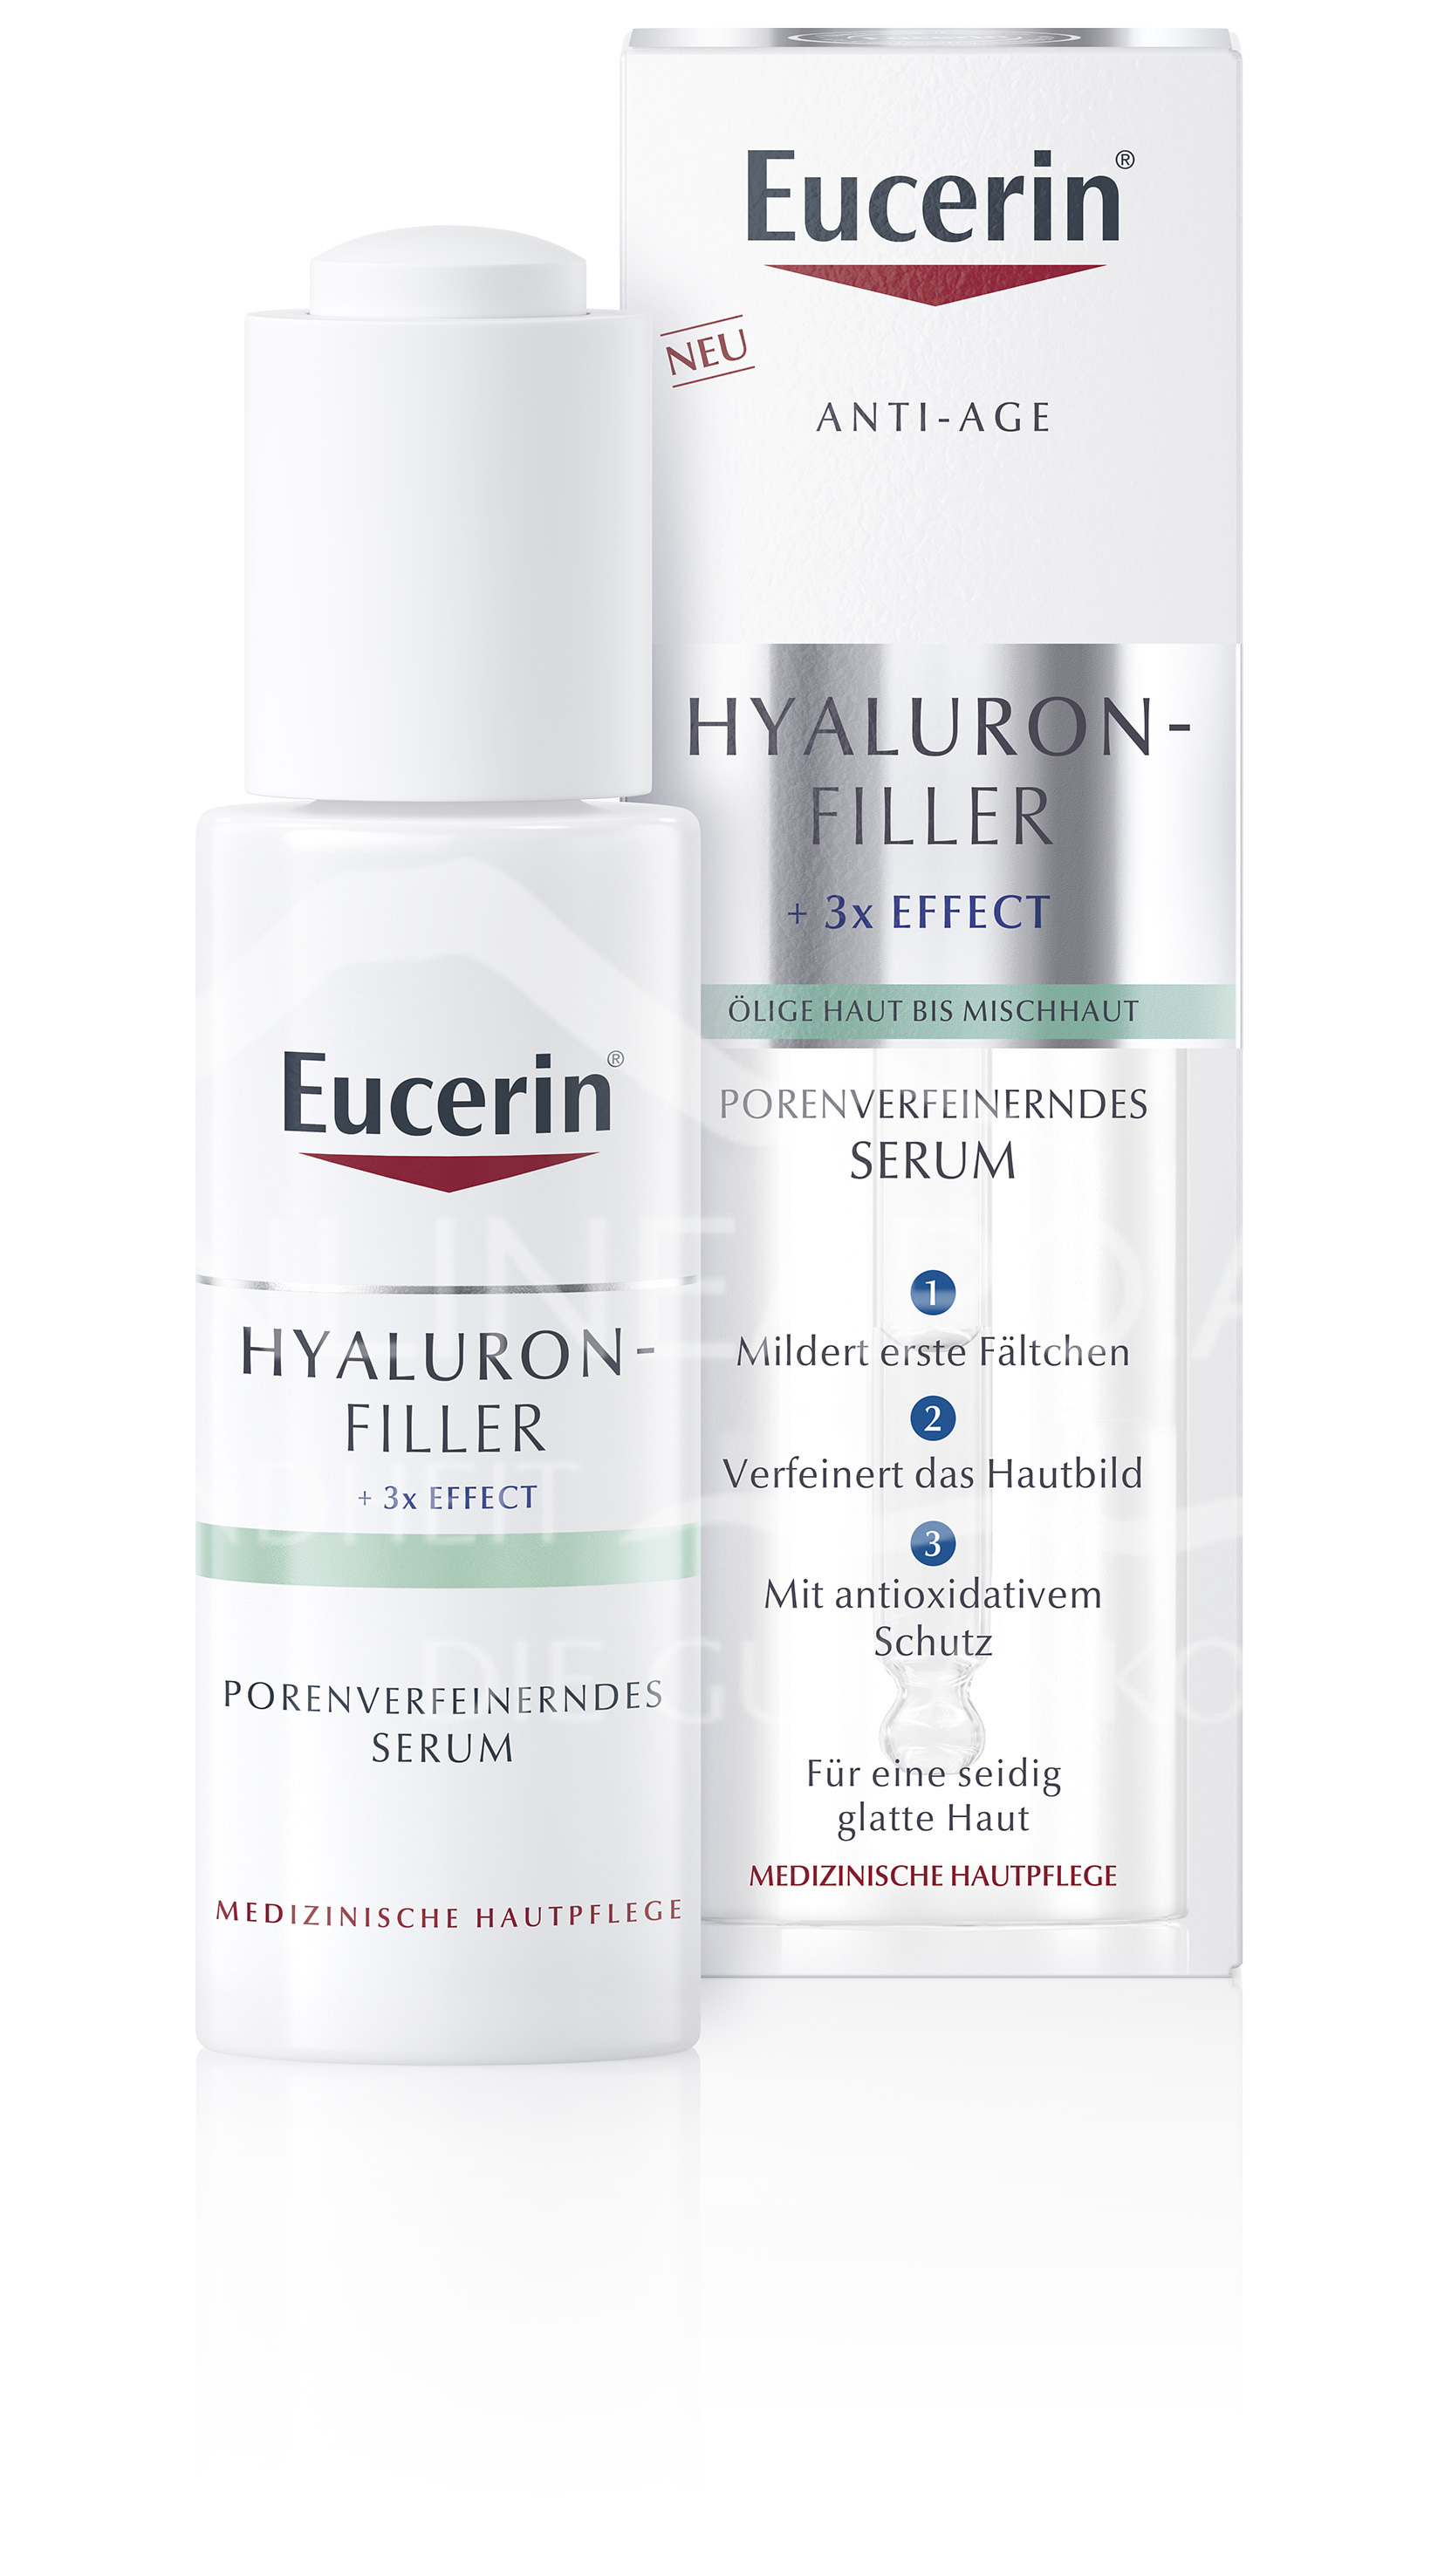 Eucerin® HYALURON-FILLER porenverfeinerndes Serum